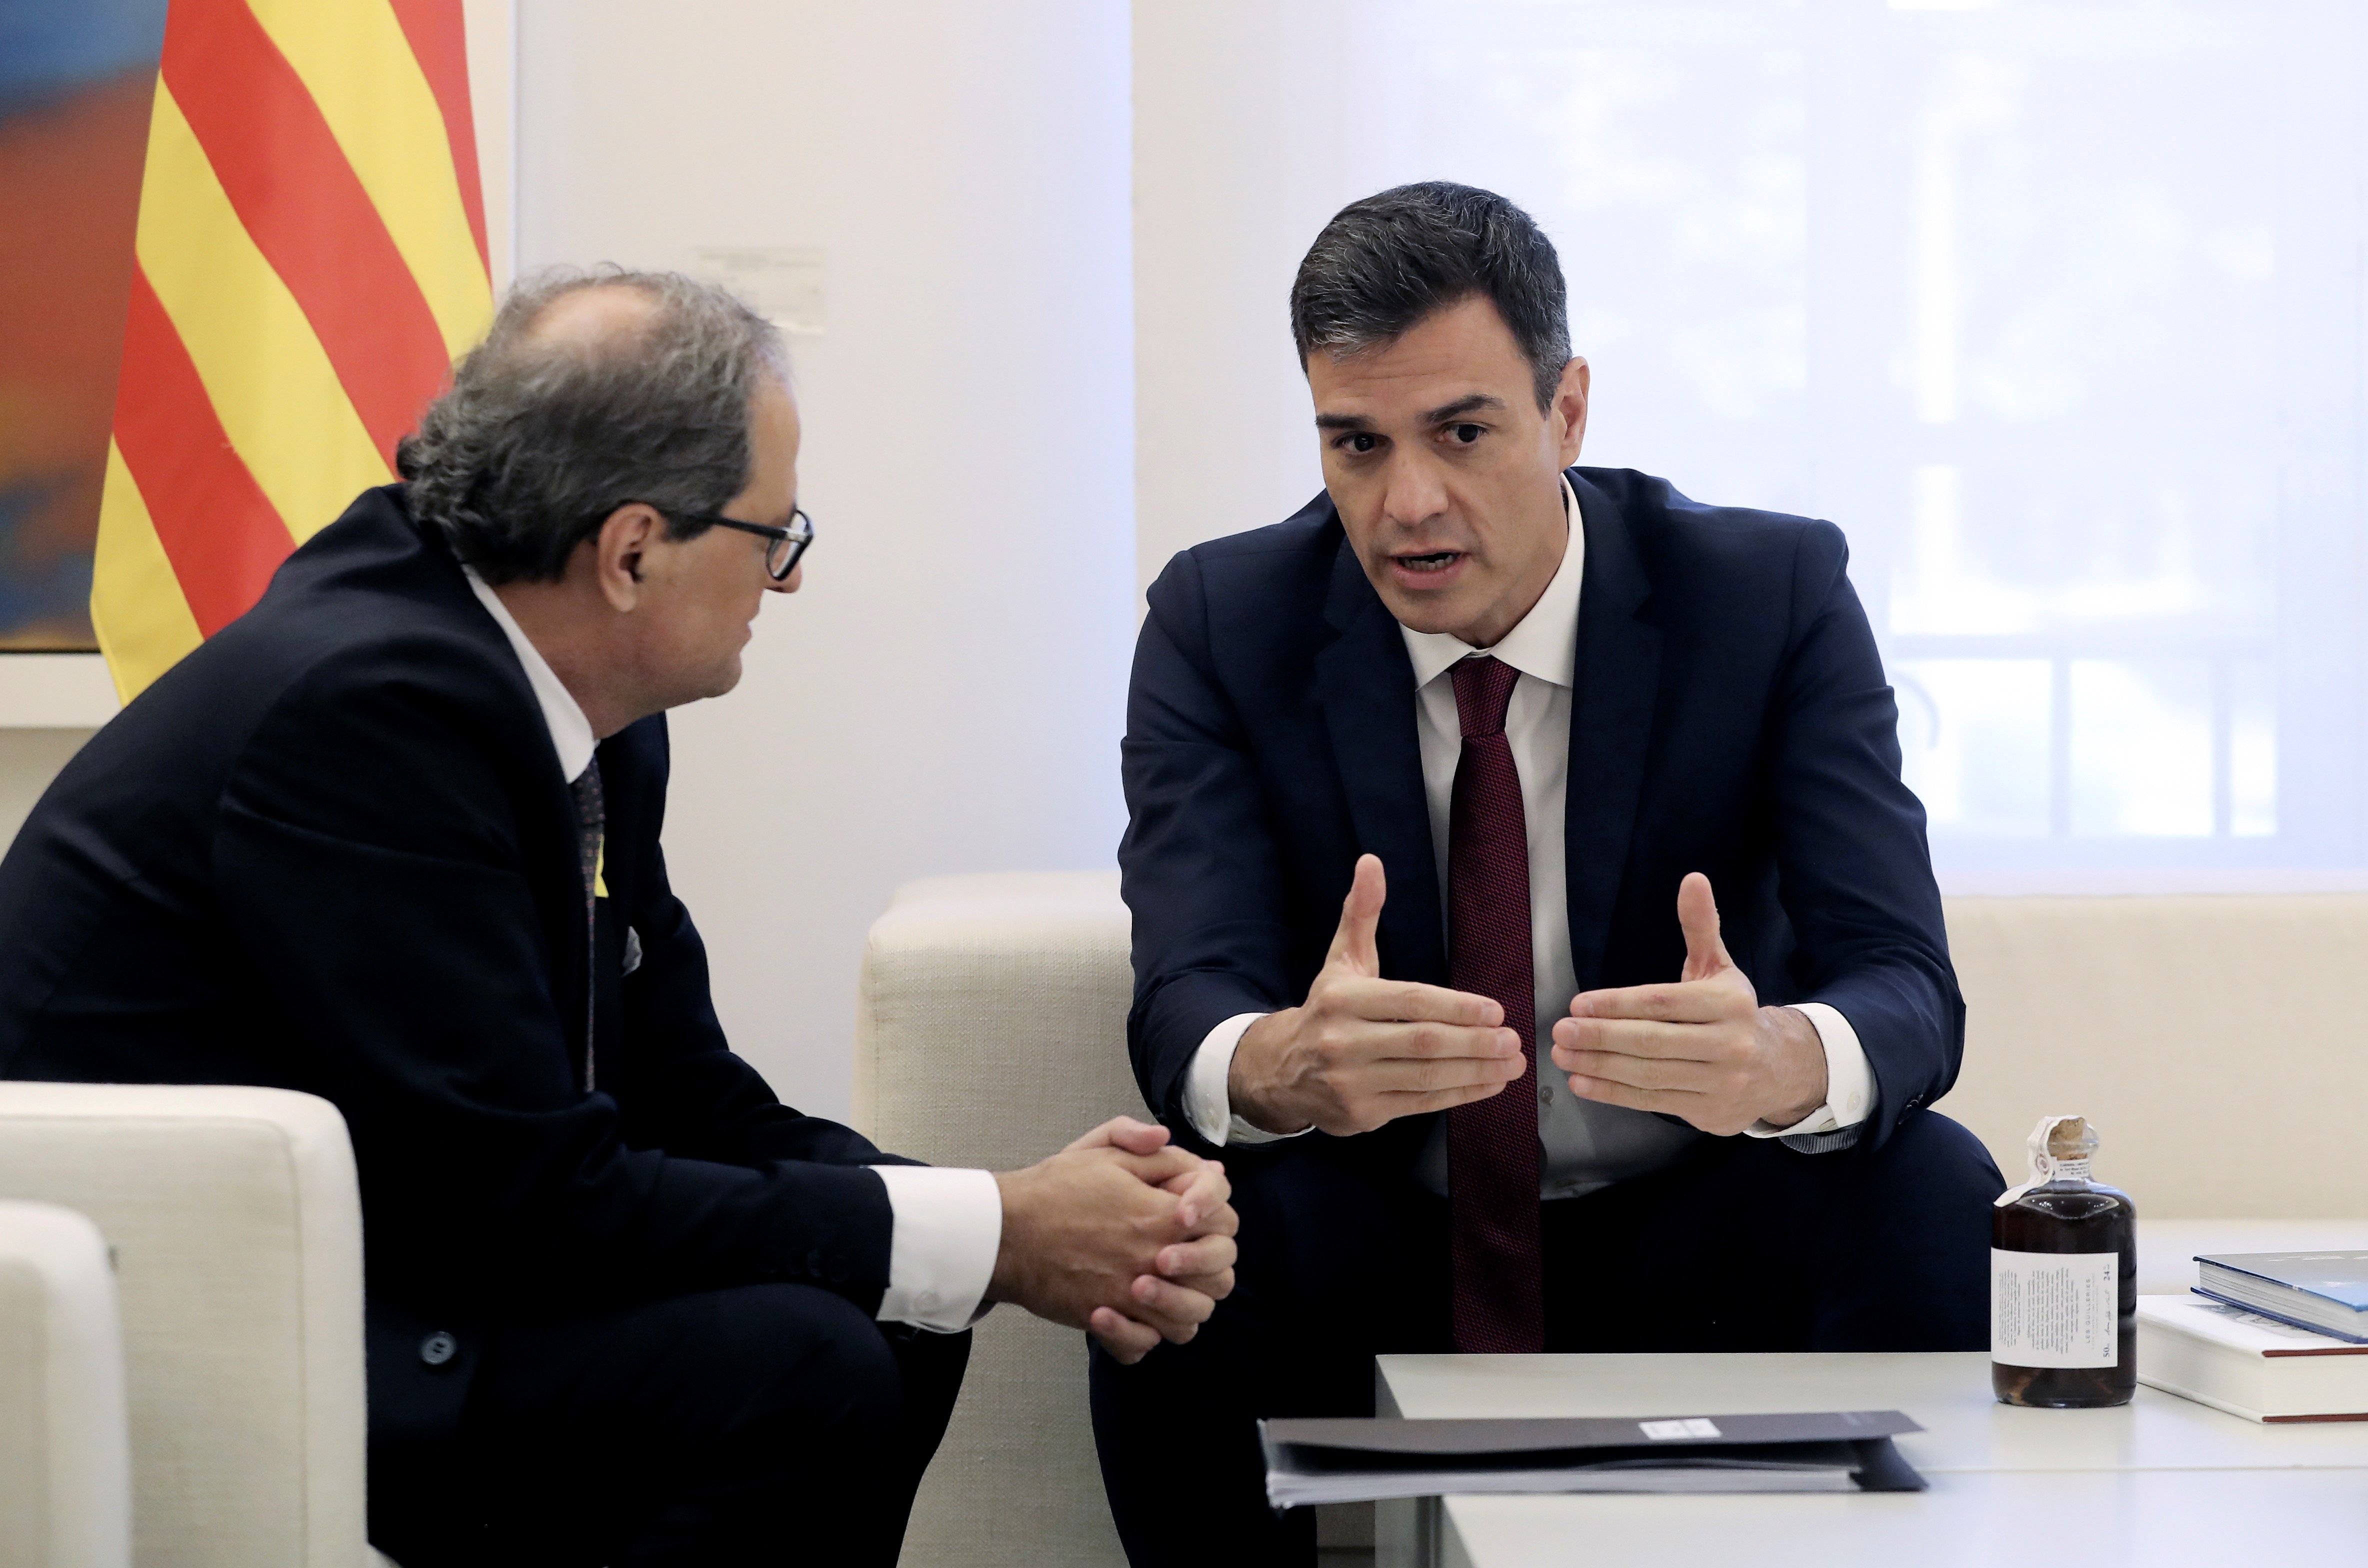 ¿Crees que el gobierno español negociará un referéndum sobre la independencia?